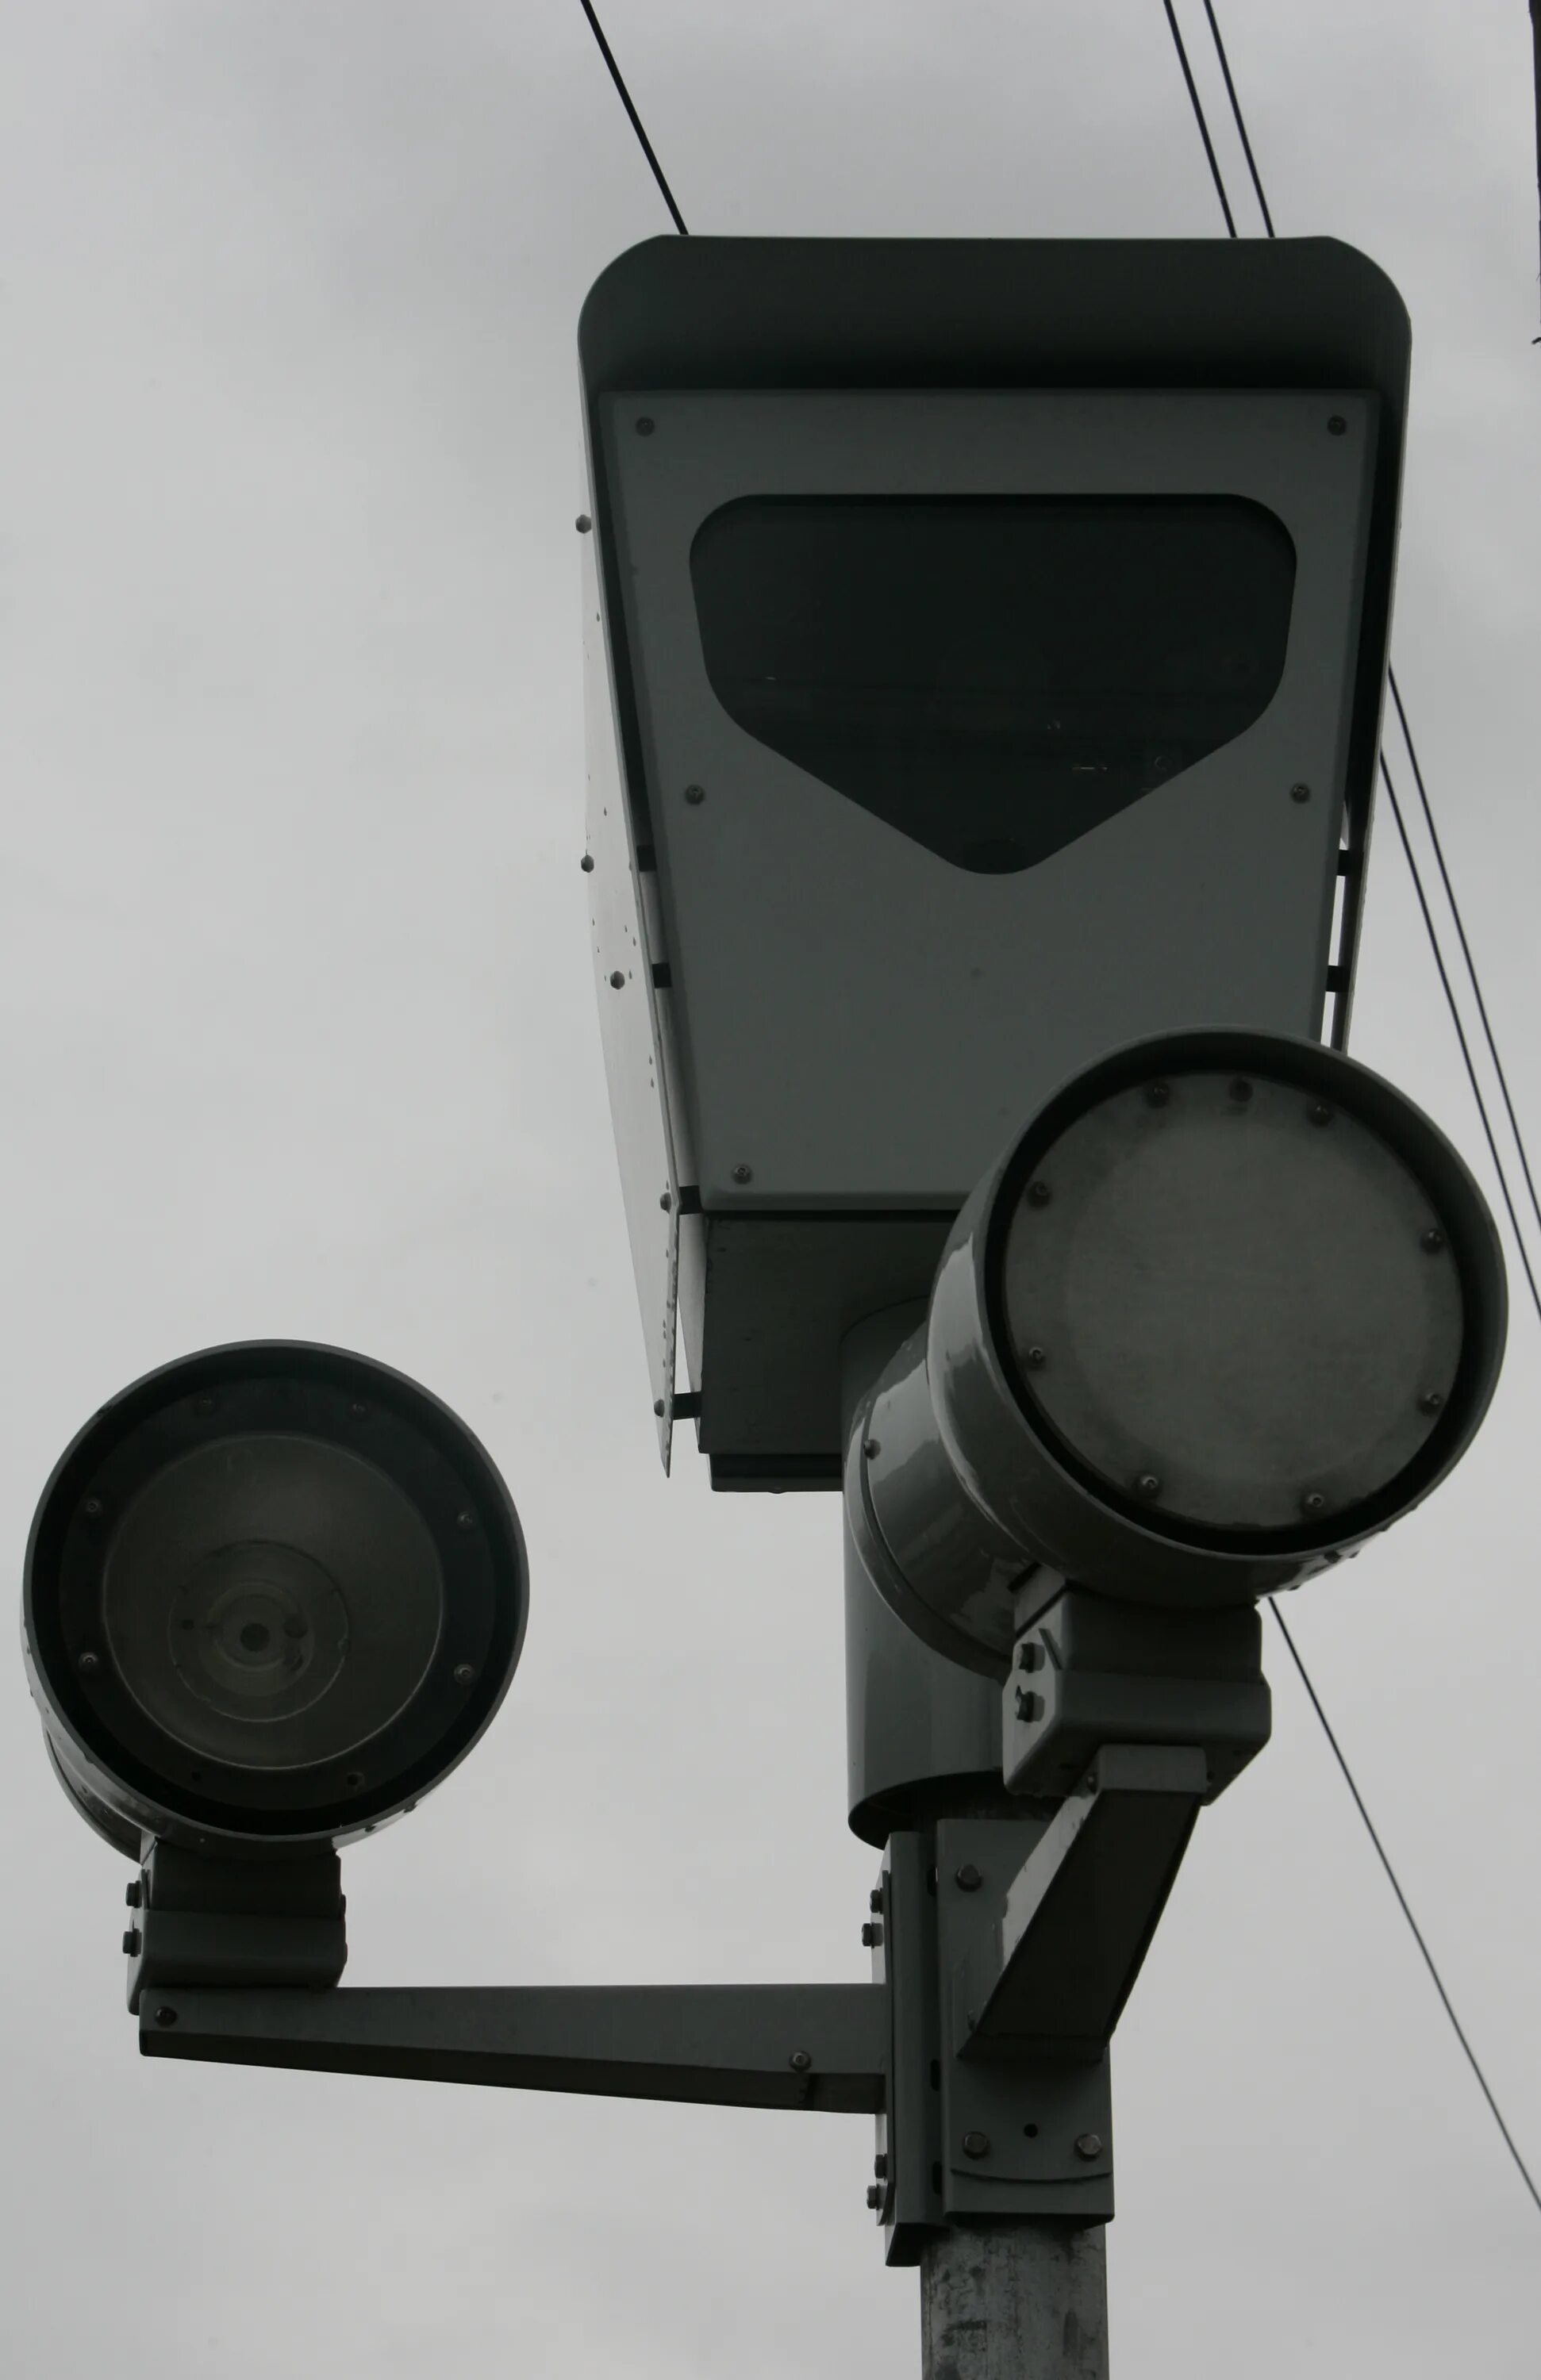 Нова камера на телефон. Радар Скат прожектор инфракрасный. Дорожные камеры. Дорожные камеры видеонаблюдения. Столб для камеры видеонаблюдения.